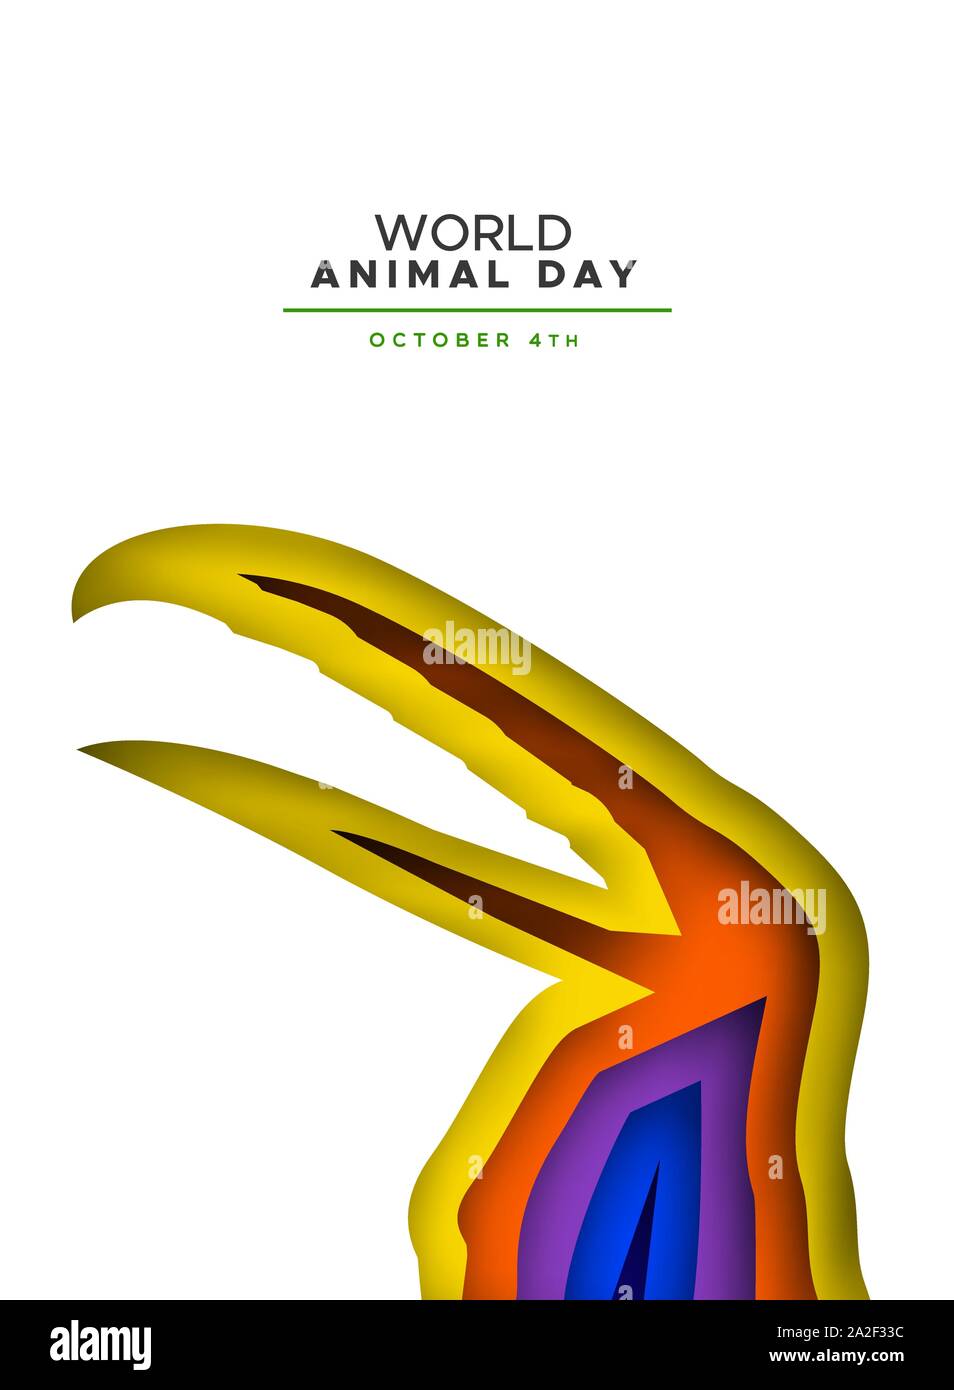 La Giornata mondiale dell'animale papercut illustrazione di strati colorati toucan bird ritaglio. Specie in via di estinzione concetto di conservazione, la tutela della fauna selvatica holiday de Illustrazione Vettoriale